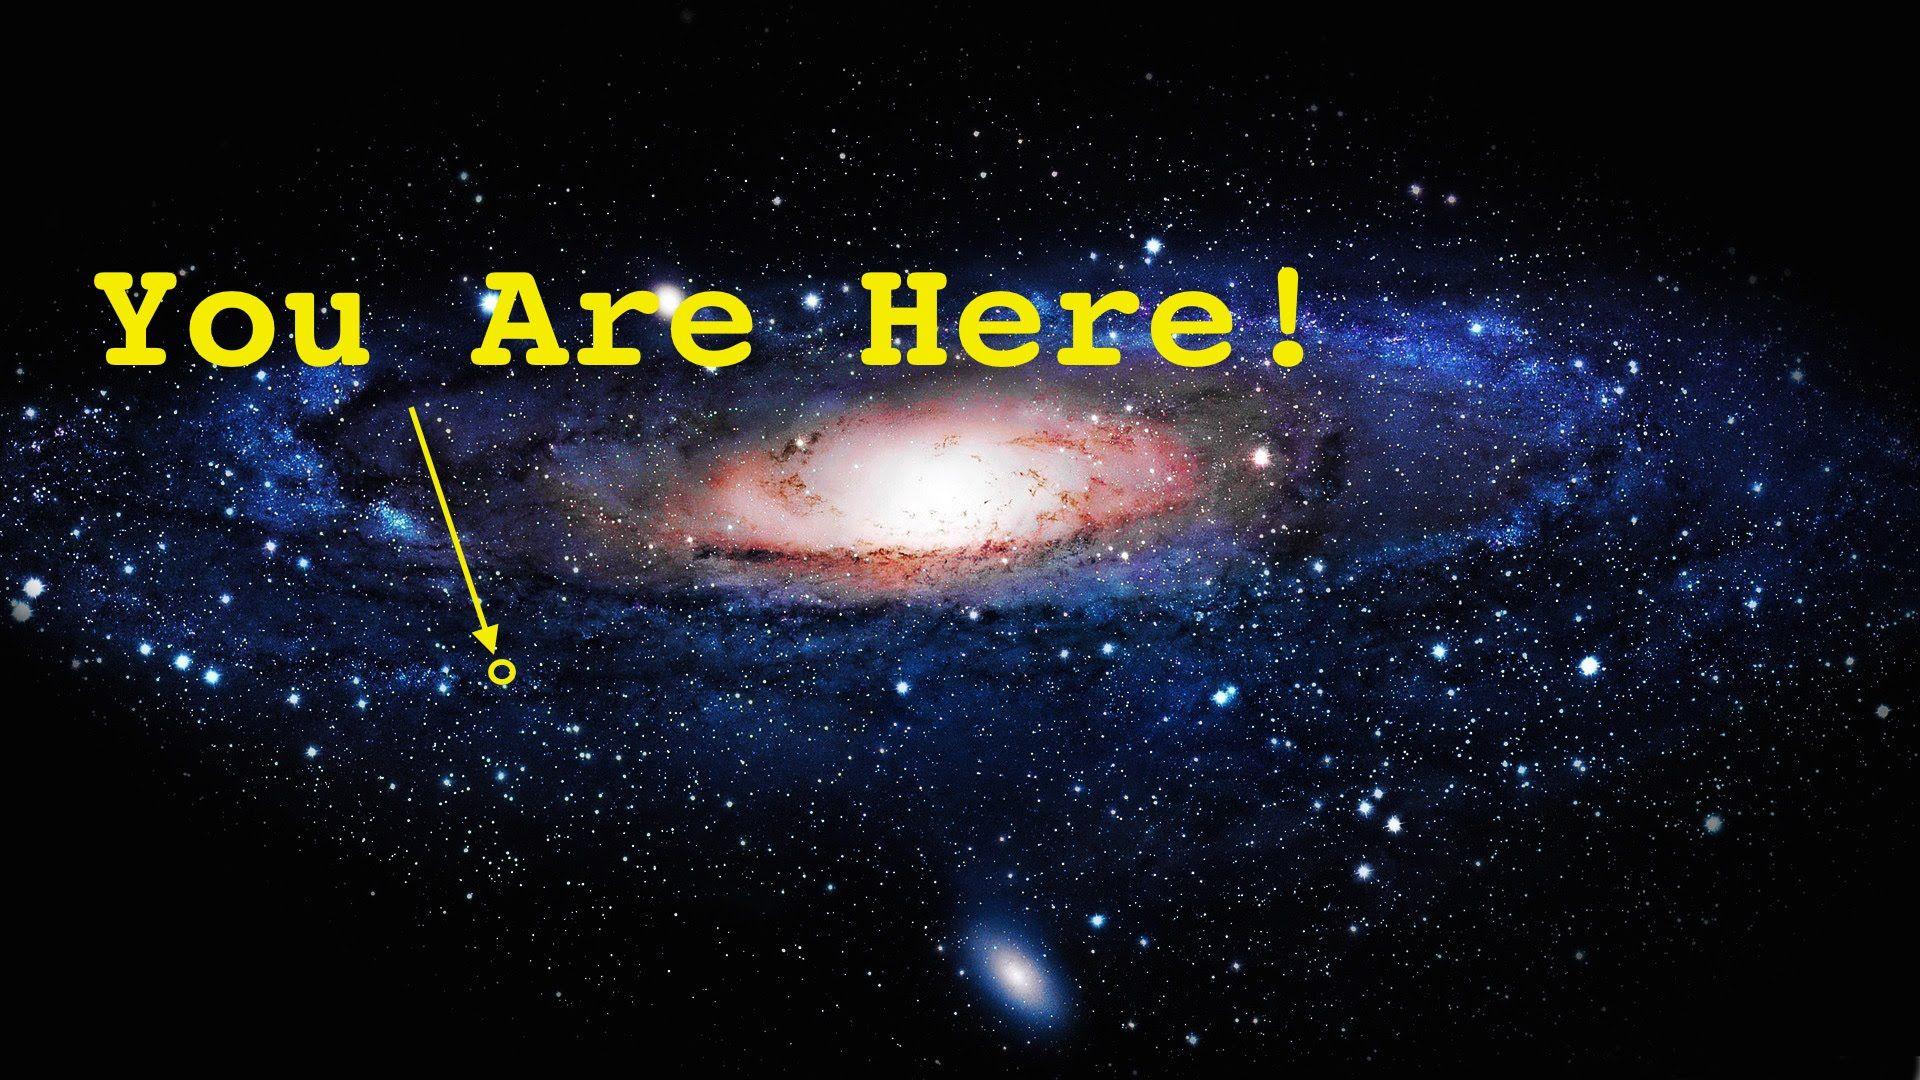 Tout univers. You are here Вселенная. Наше место во Вселенной. Млечный путь мы здесь. Размер нашей Галактики.